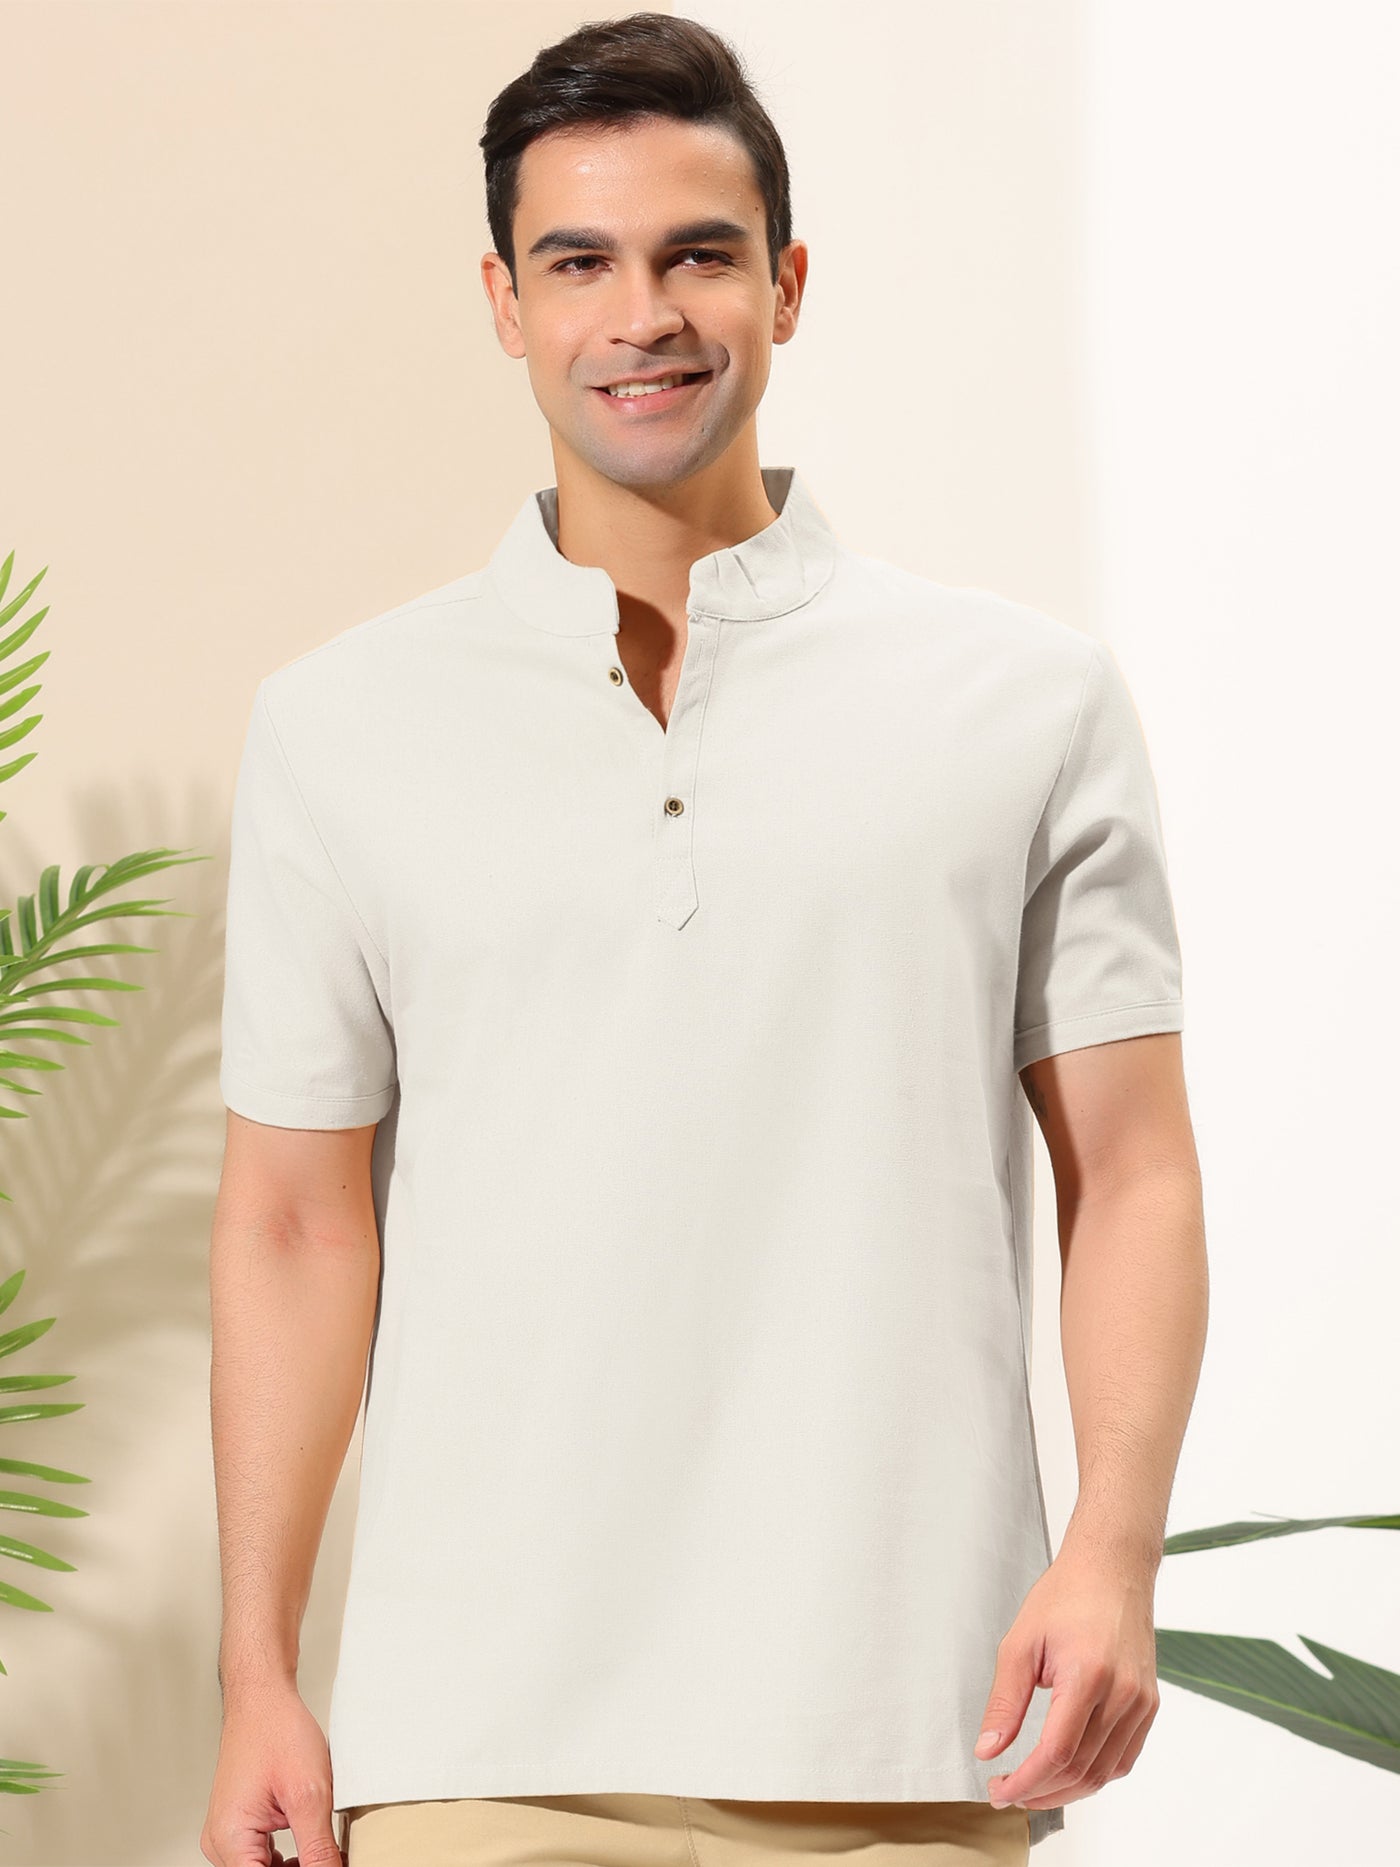 Bublédon Casual Linen Stand Collar Short Sleeve Henley Shirts